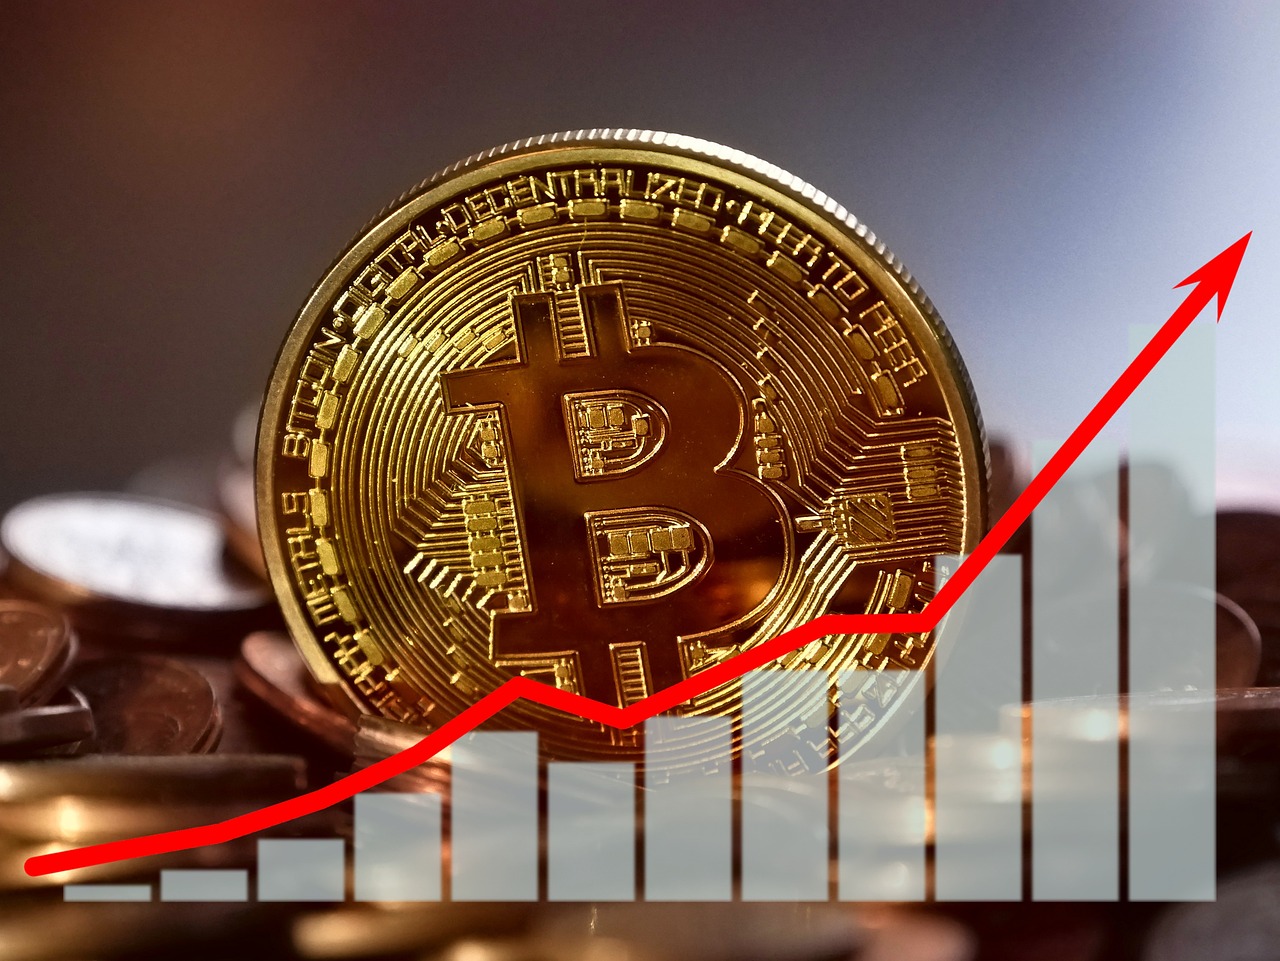 La ‘bomba real’ de Bitcoin se acerca a nuevos máximos históricos, dice un analista